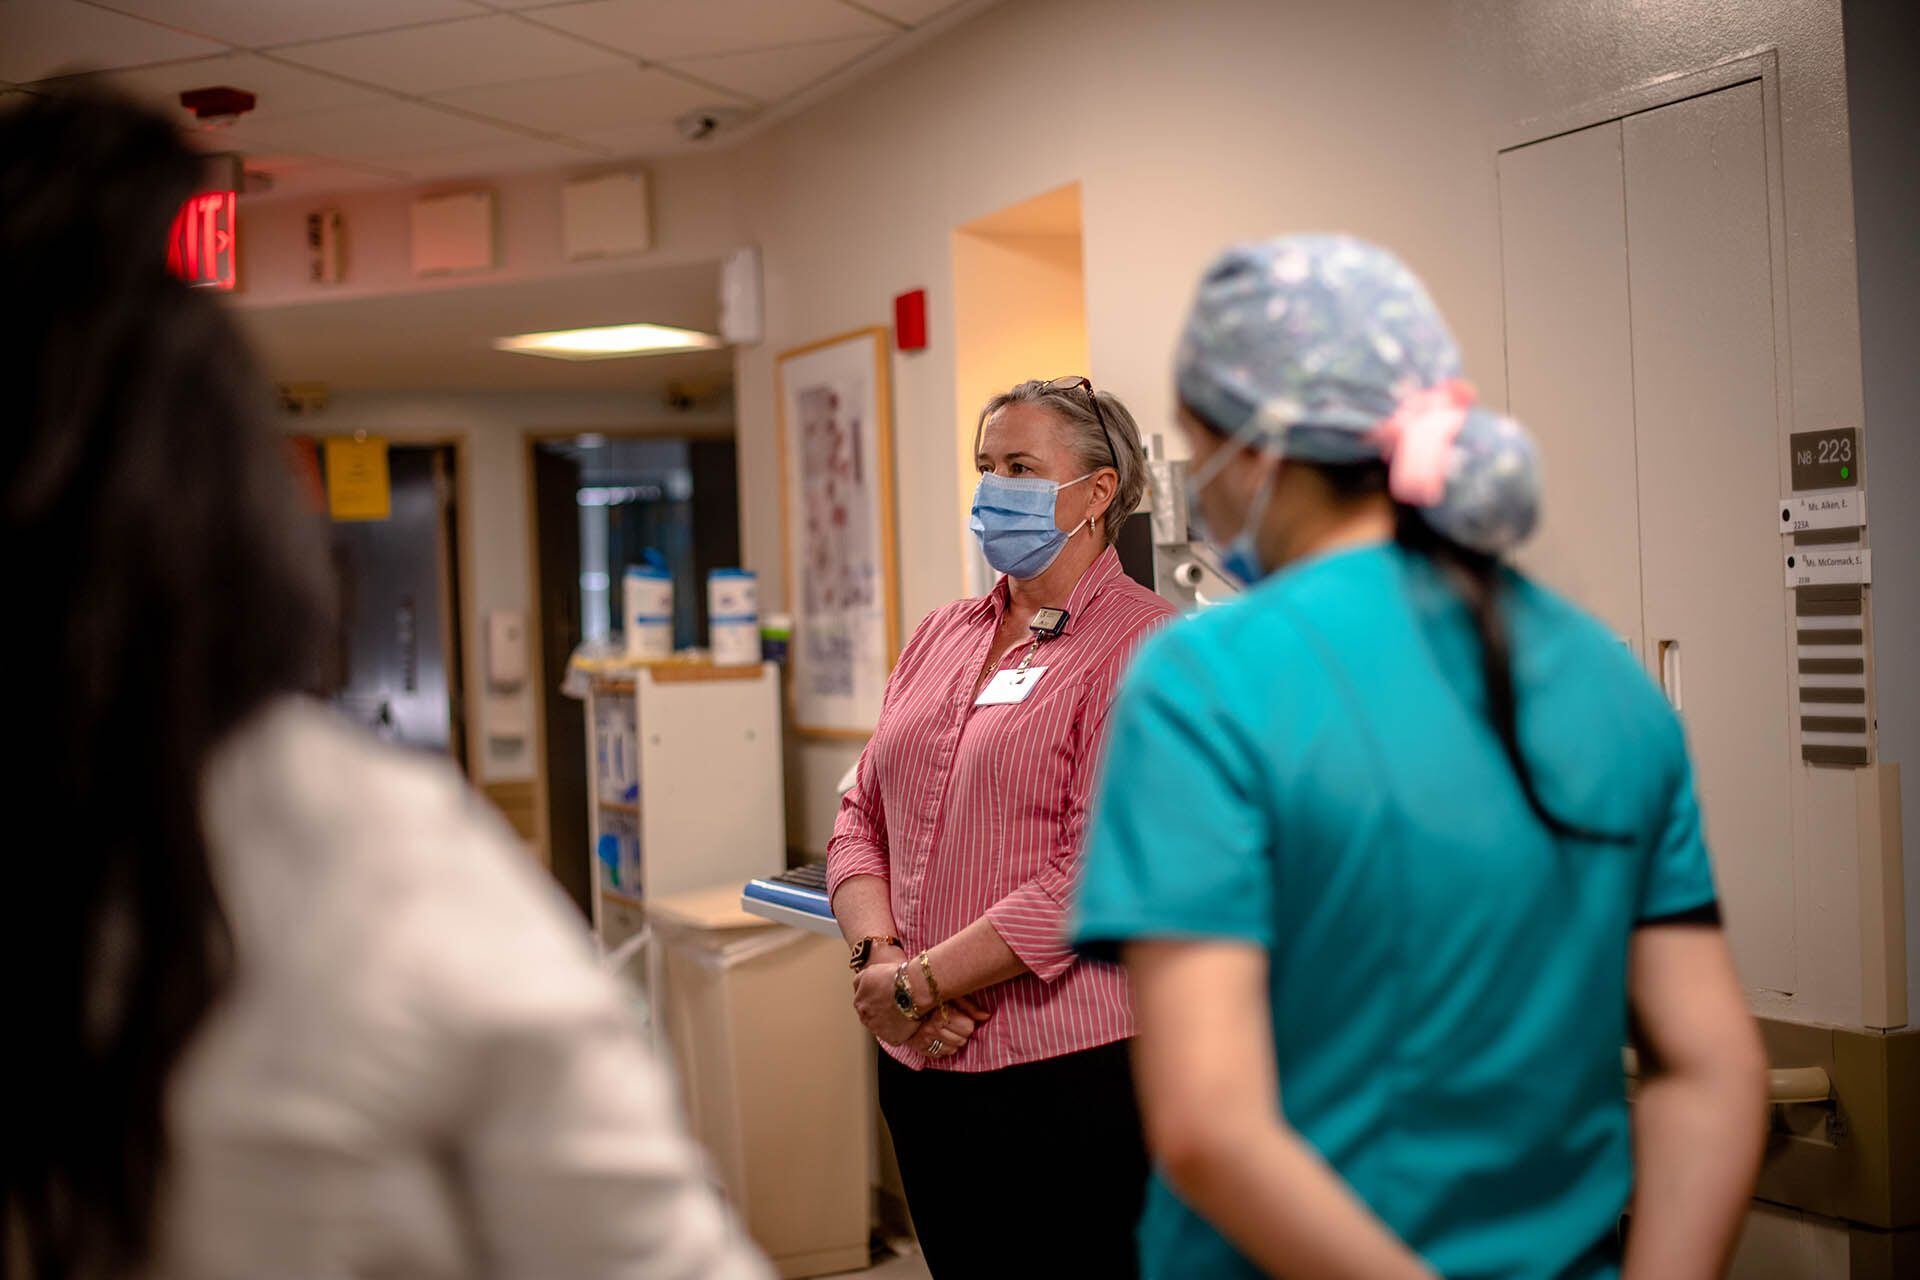 La enfermera Clair Lunt habla con su personal sobre la capacidad de la IA para predecir posibles caídas de los pacientes ( Hilary Swift para The Washington Post)